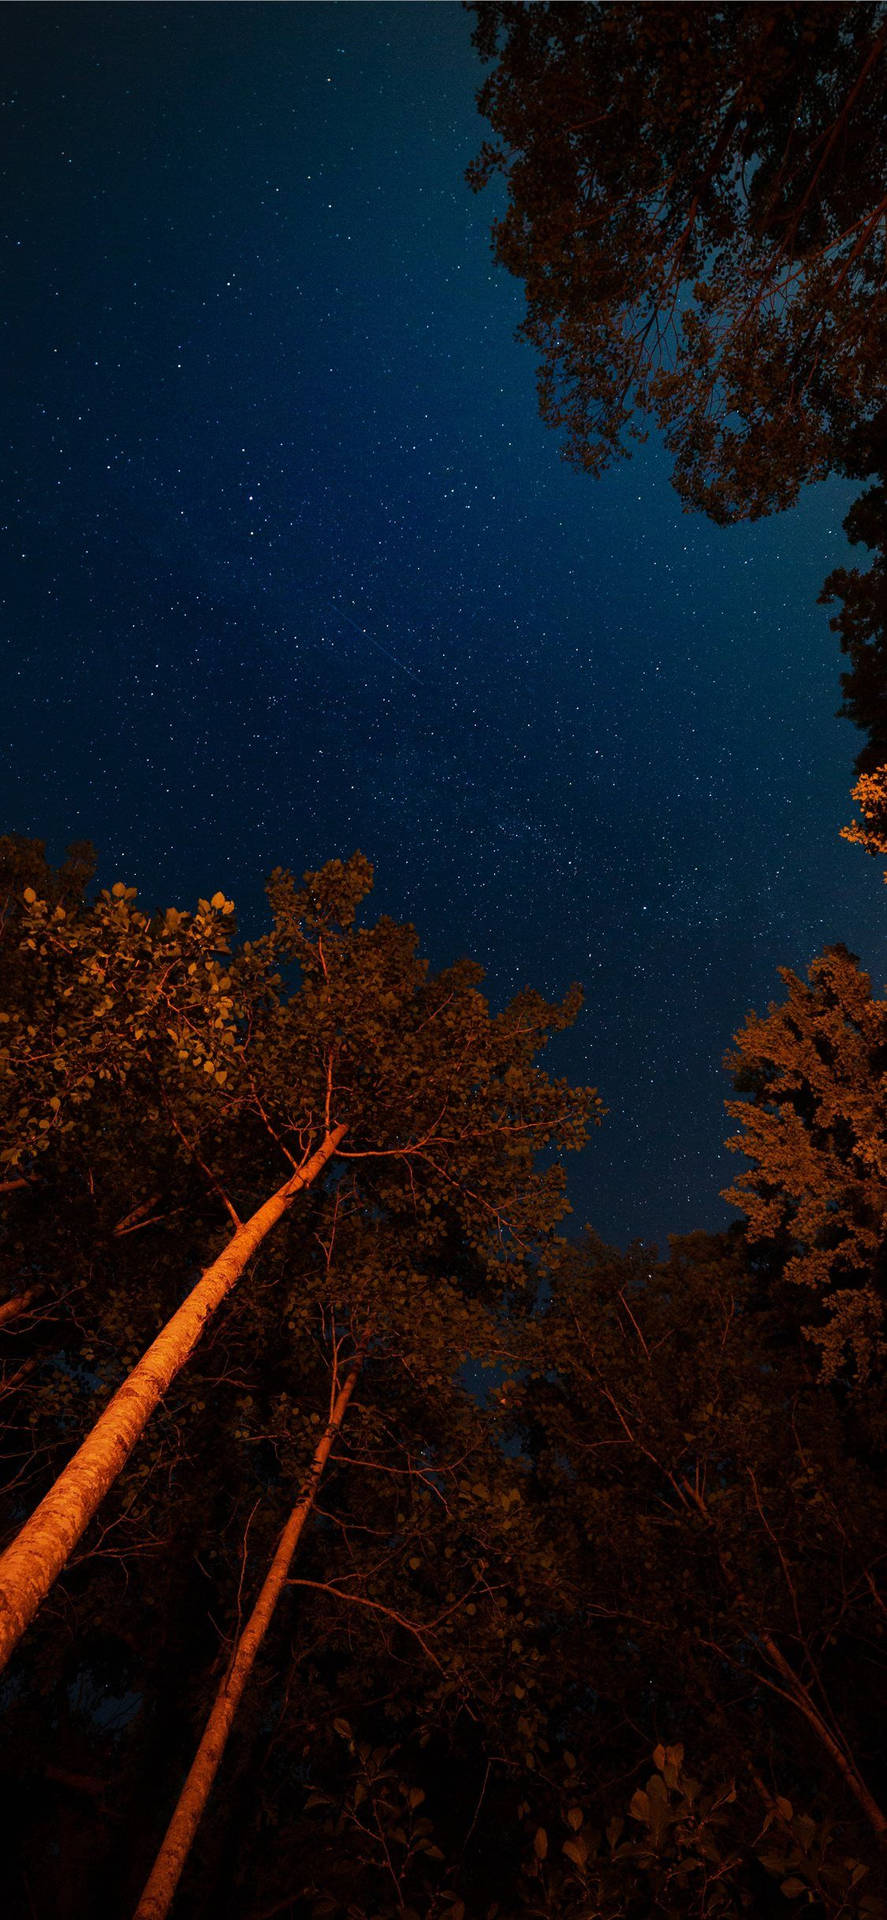 Bạn đang tìm kiếm một hình ảnh thú vị để làm hình nền cho Iphone 11 của mình? Hãy tải ngay bức ảnh Iphone 11 Forest Night Sky Aesthetic để khám phá vẻ đẹp hoang sơ và tối tăm của bầu trời đêm trong rừng, tạo nên một không gian tràn đầy cảm hứng và sự bình yên.